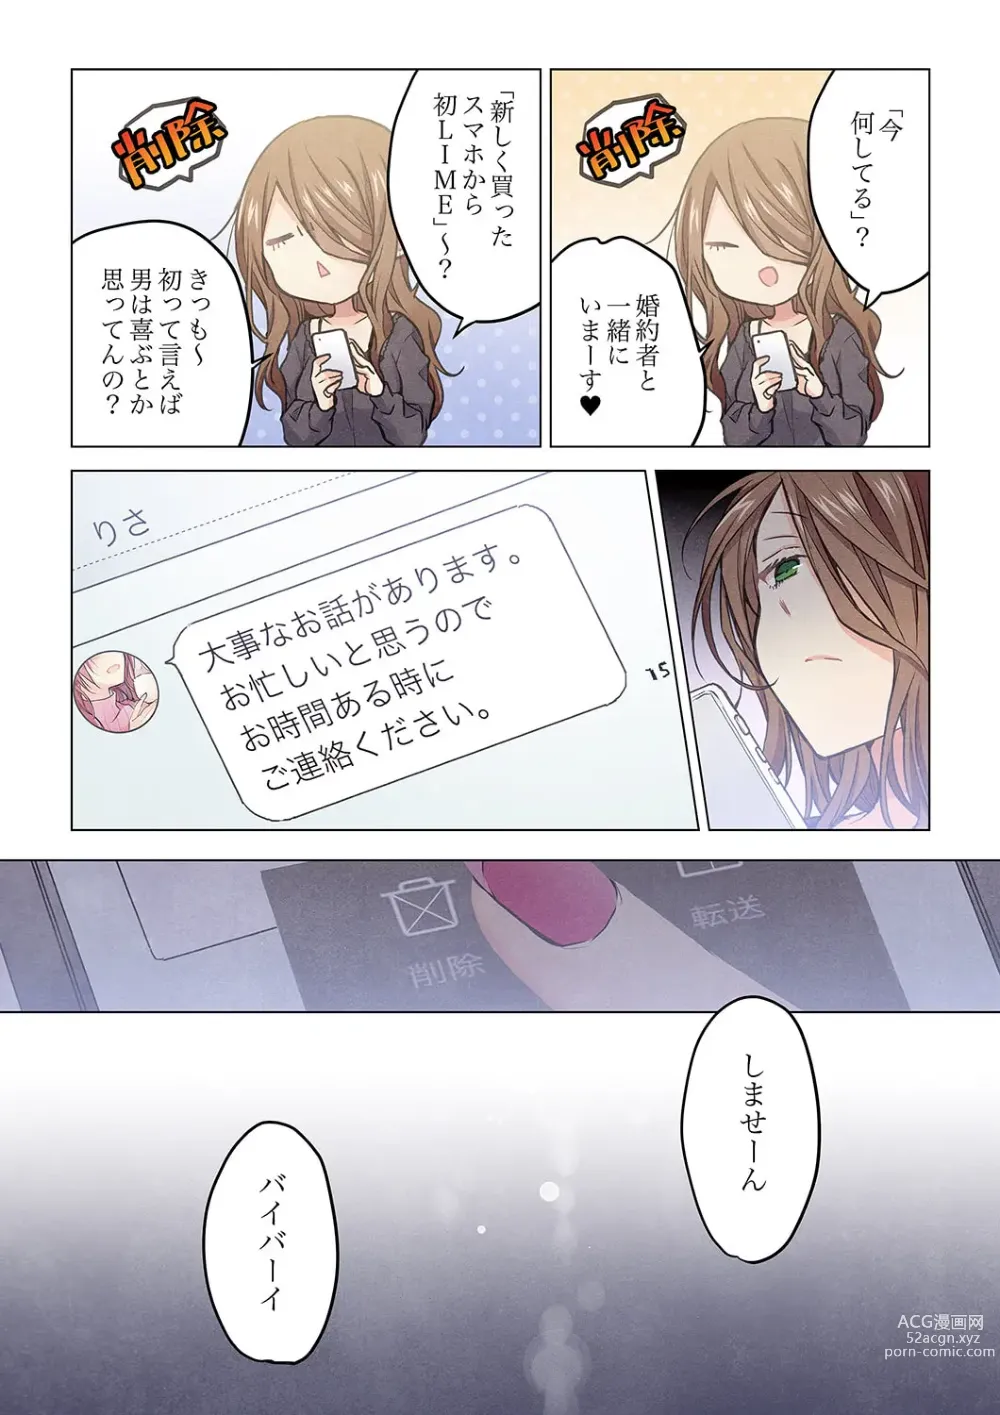 Page 26 of manga Kimi ga Sore o Ai to Yonde mo - Even if you call it love 33